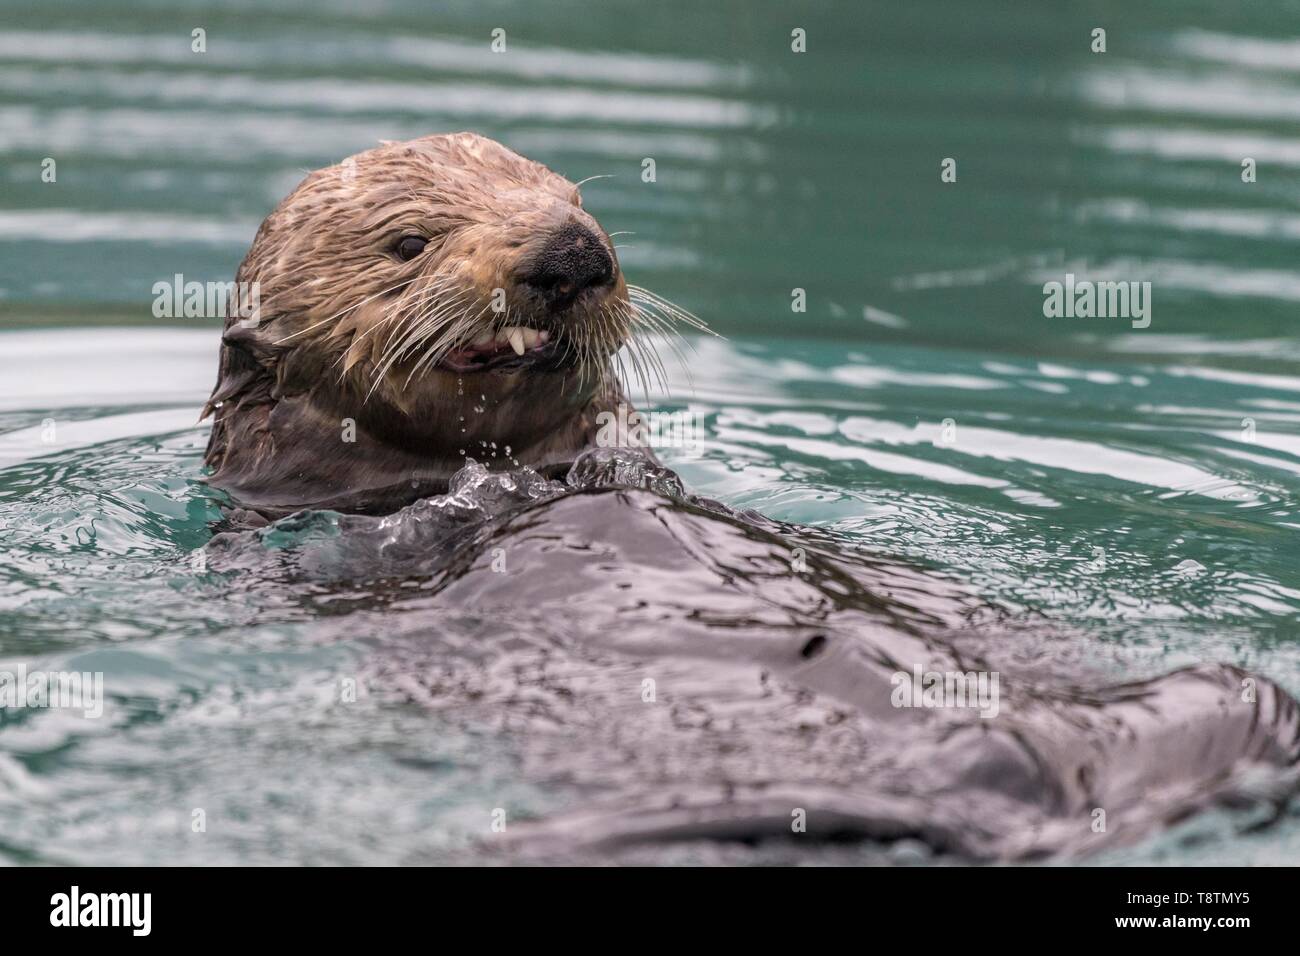 Sea Otter (Enhydra lutris) in acqua si presenta aggressiva, ritratto animale, Seward, Alaska, STATI UNITI D'AMERICA Foto Stock